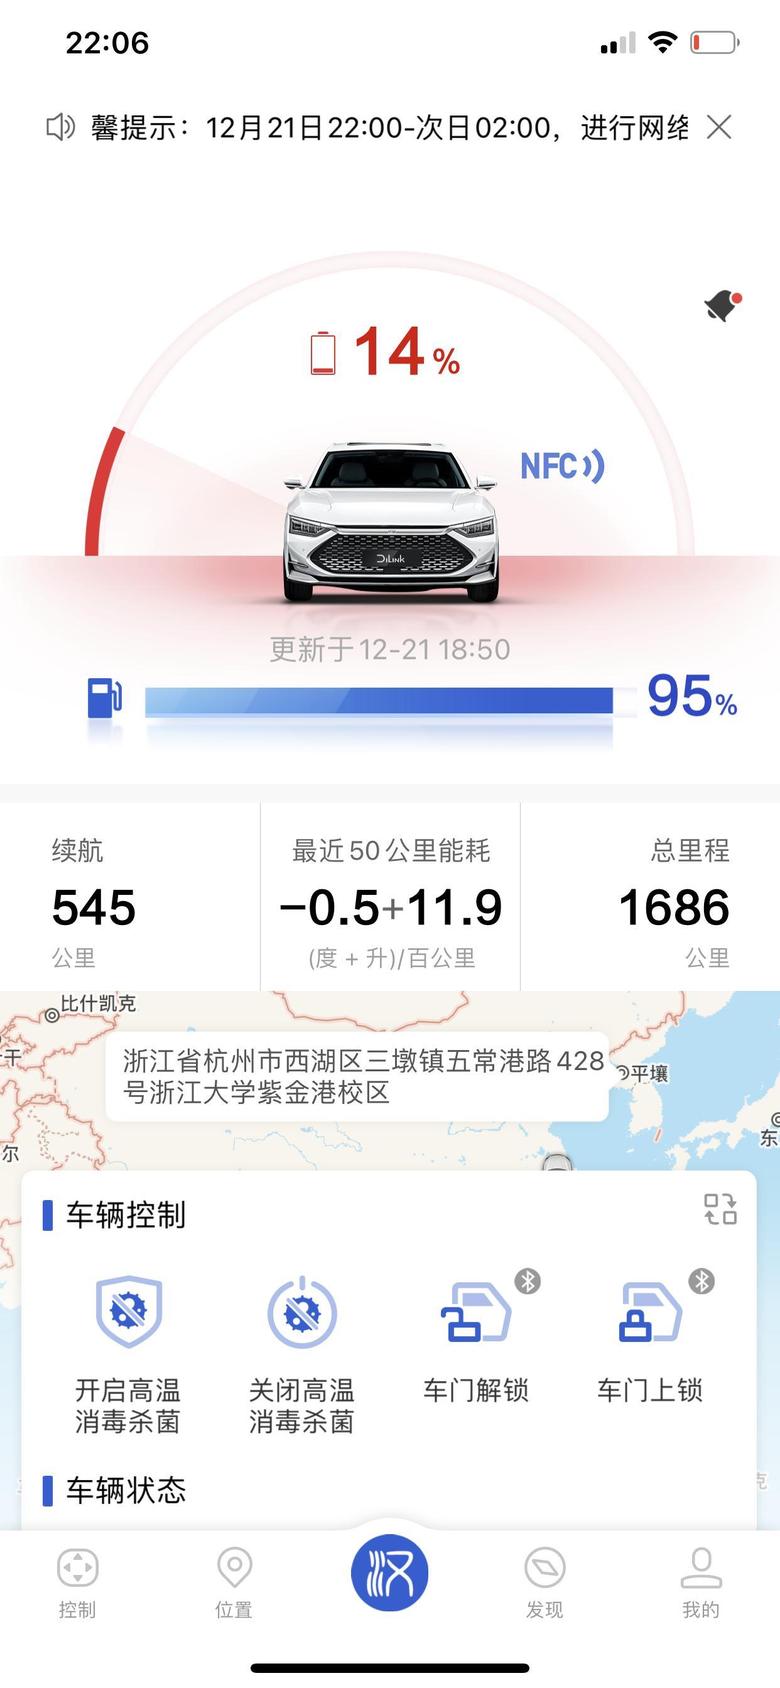 汉dm 车友们帮我看看我这个油耗正常吗杭州市内行驶，堵车非常厉害，车库只有快充充电桩所以买来没有充过电。